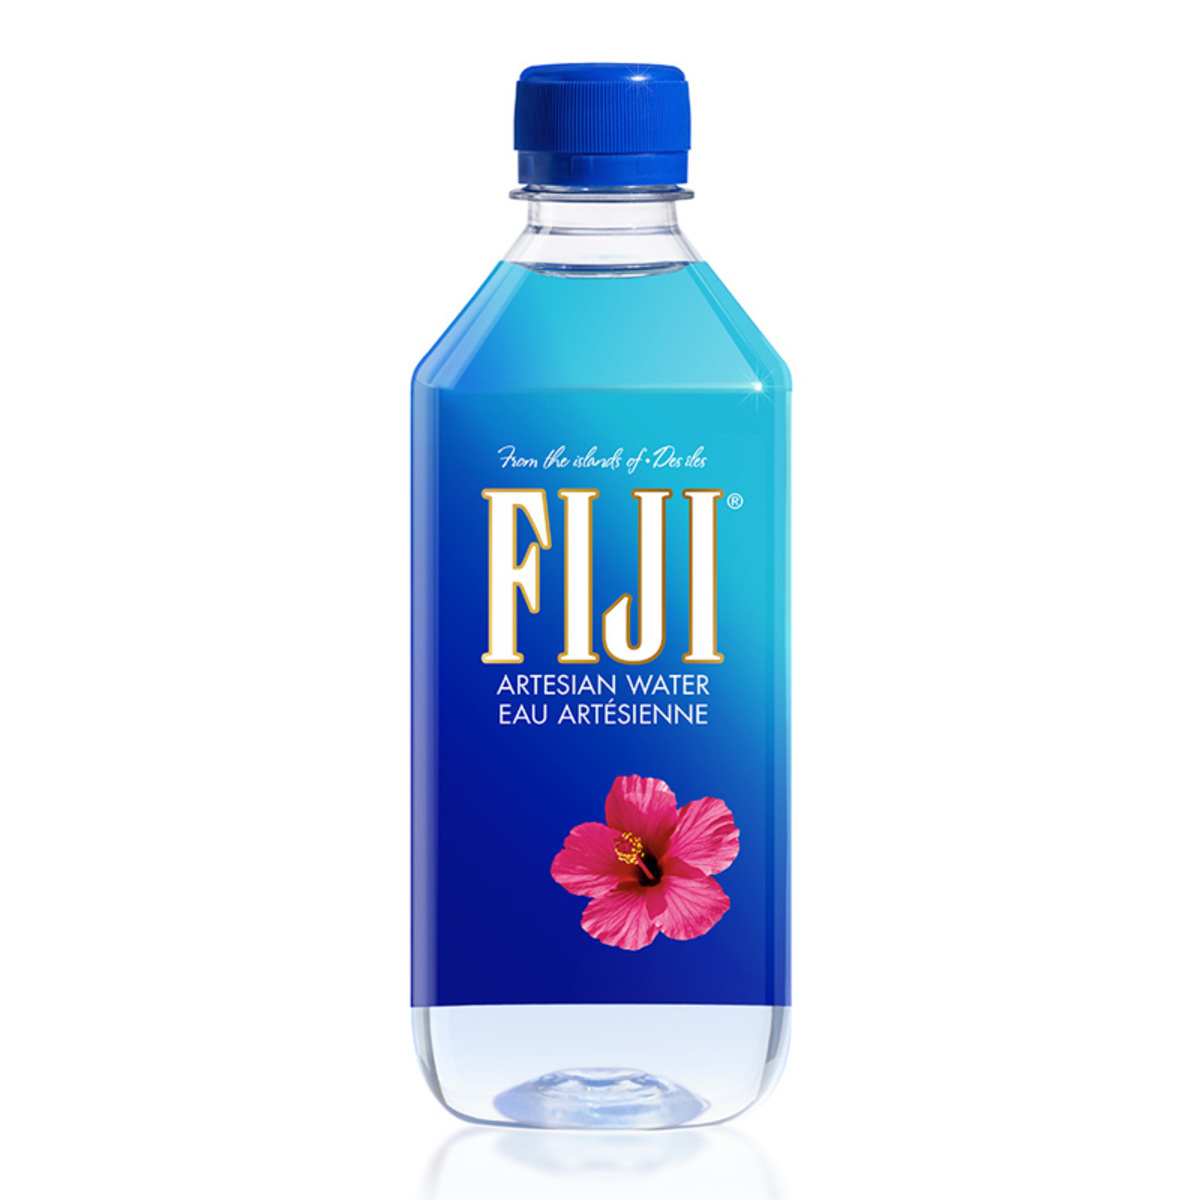 FIJI Water, 24 x 500ml